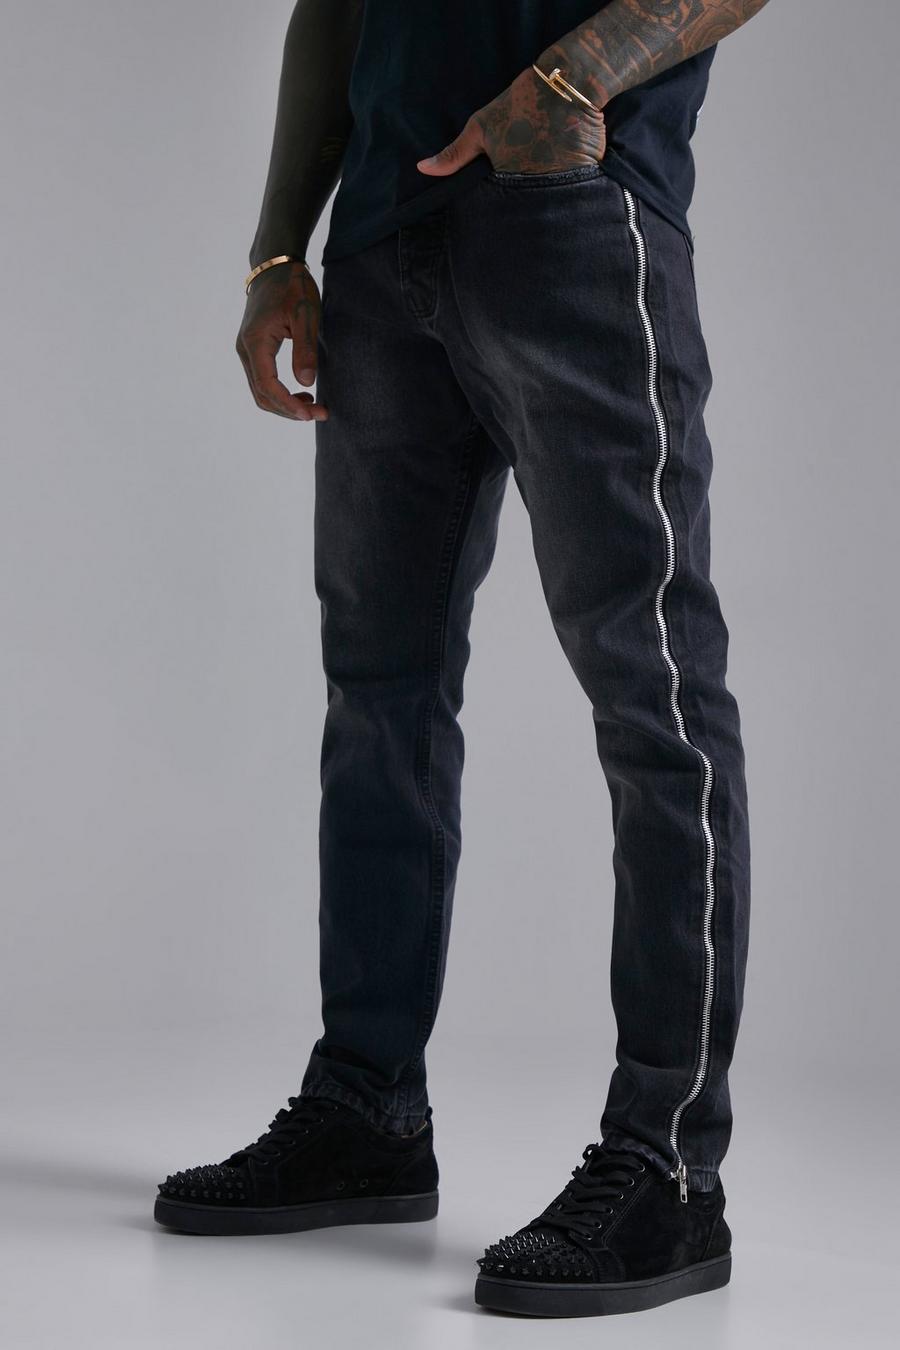 Jeans stile Biker Super Skinny Fit con strappi & rattoppi, Black negro